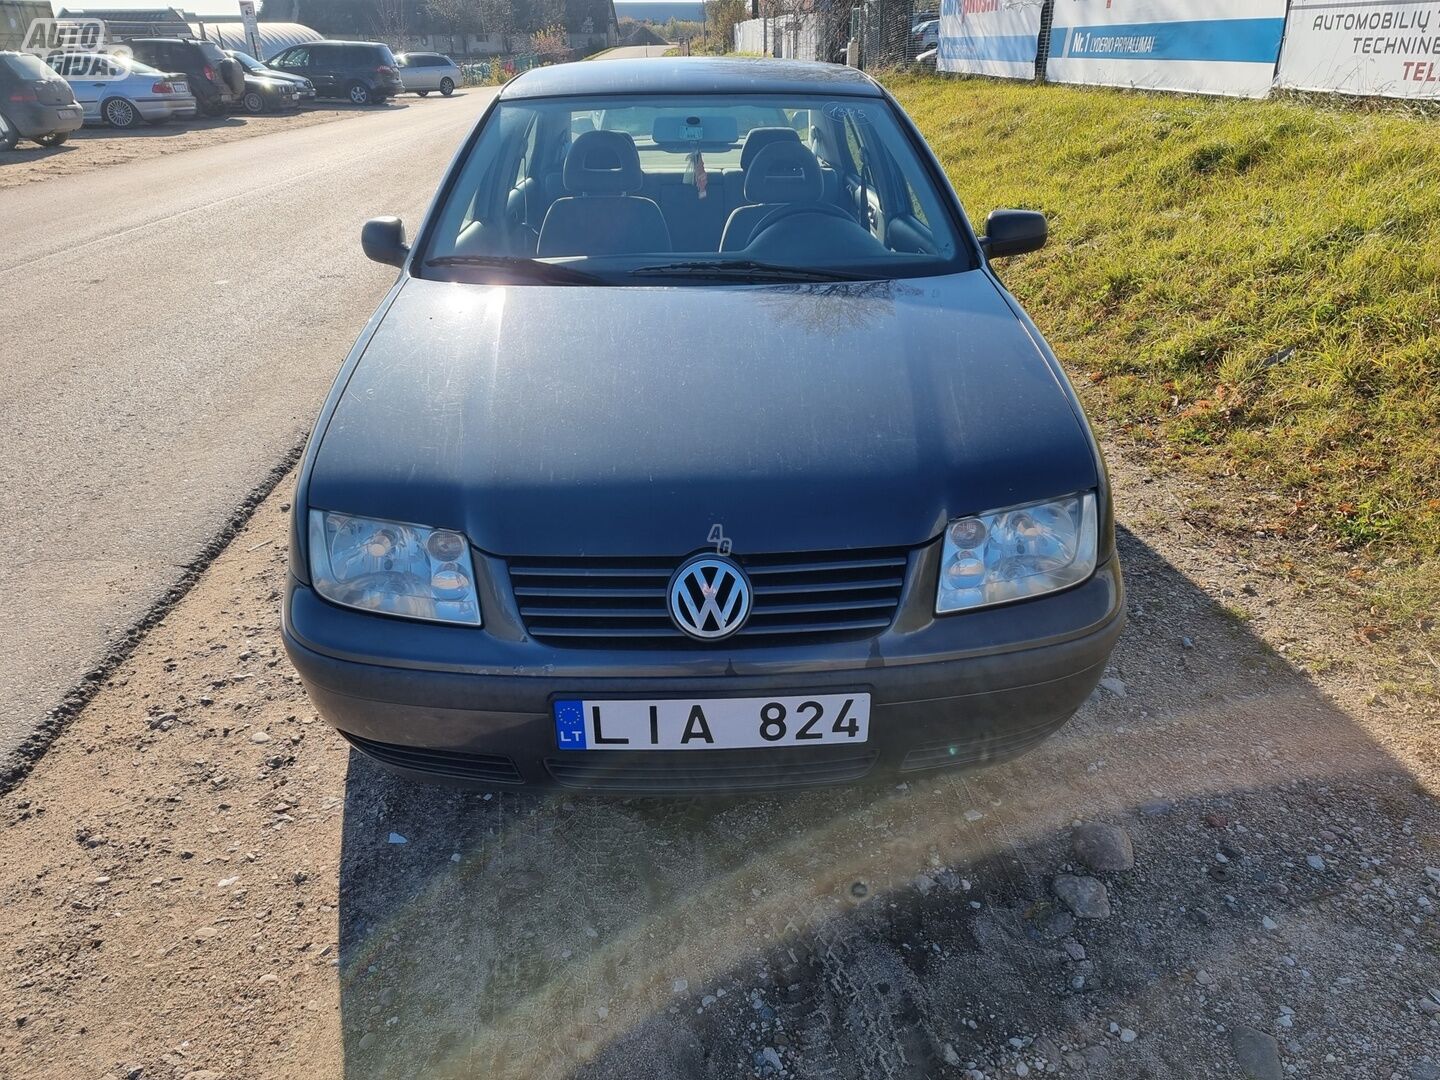 Volkswagen Bora 2001 m dalys